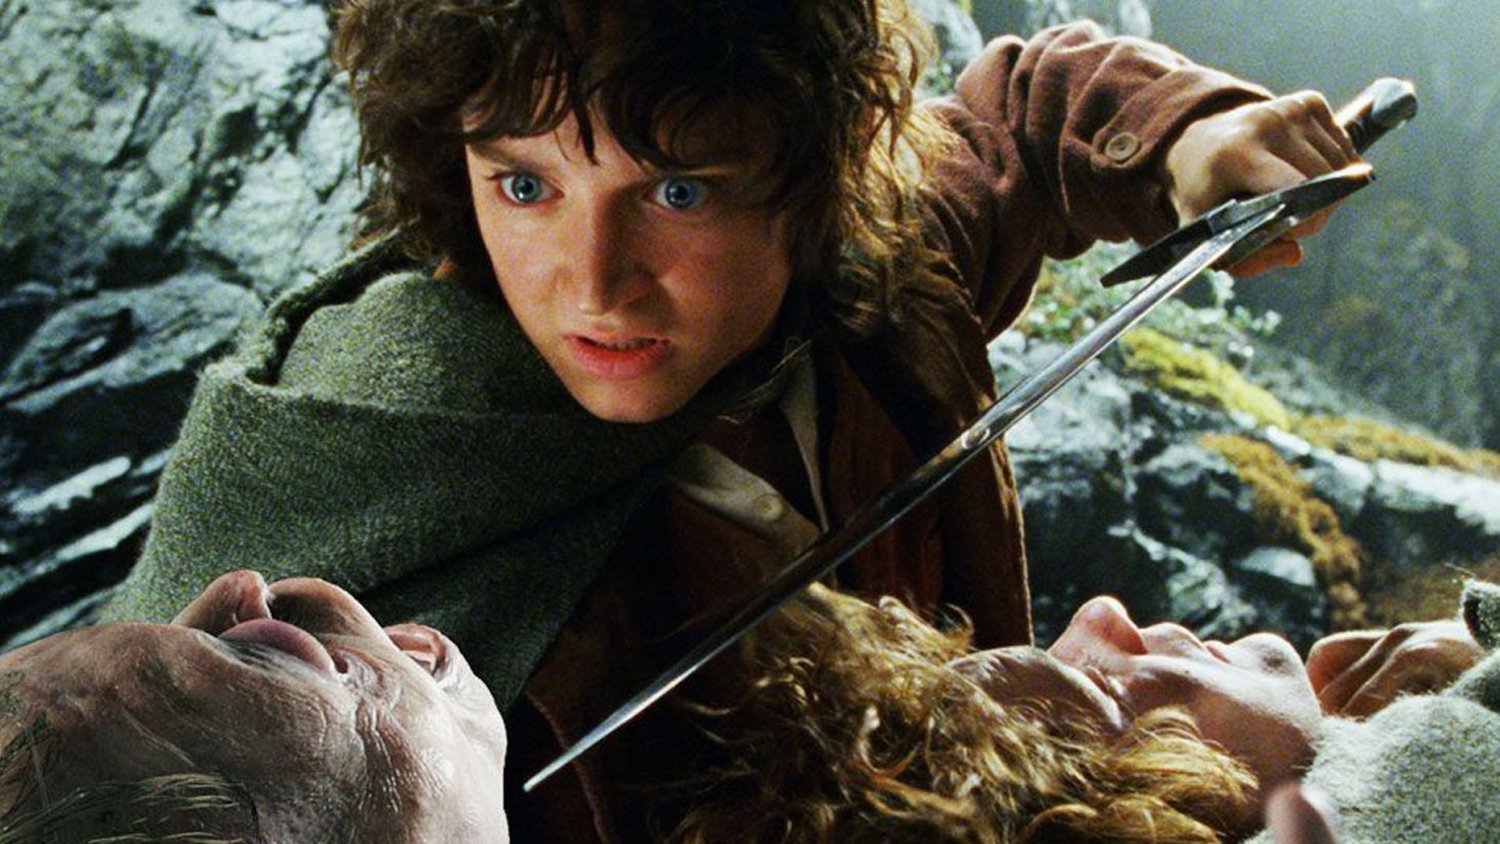 Властелин колец моменты. Фродо Бэггинс. Хоббит Фродо. Бильбо Бэггинс и Фродо.